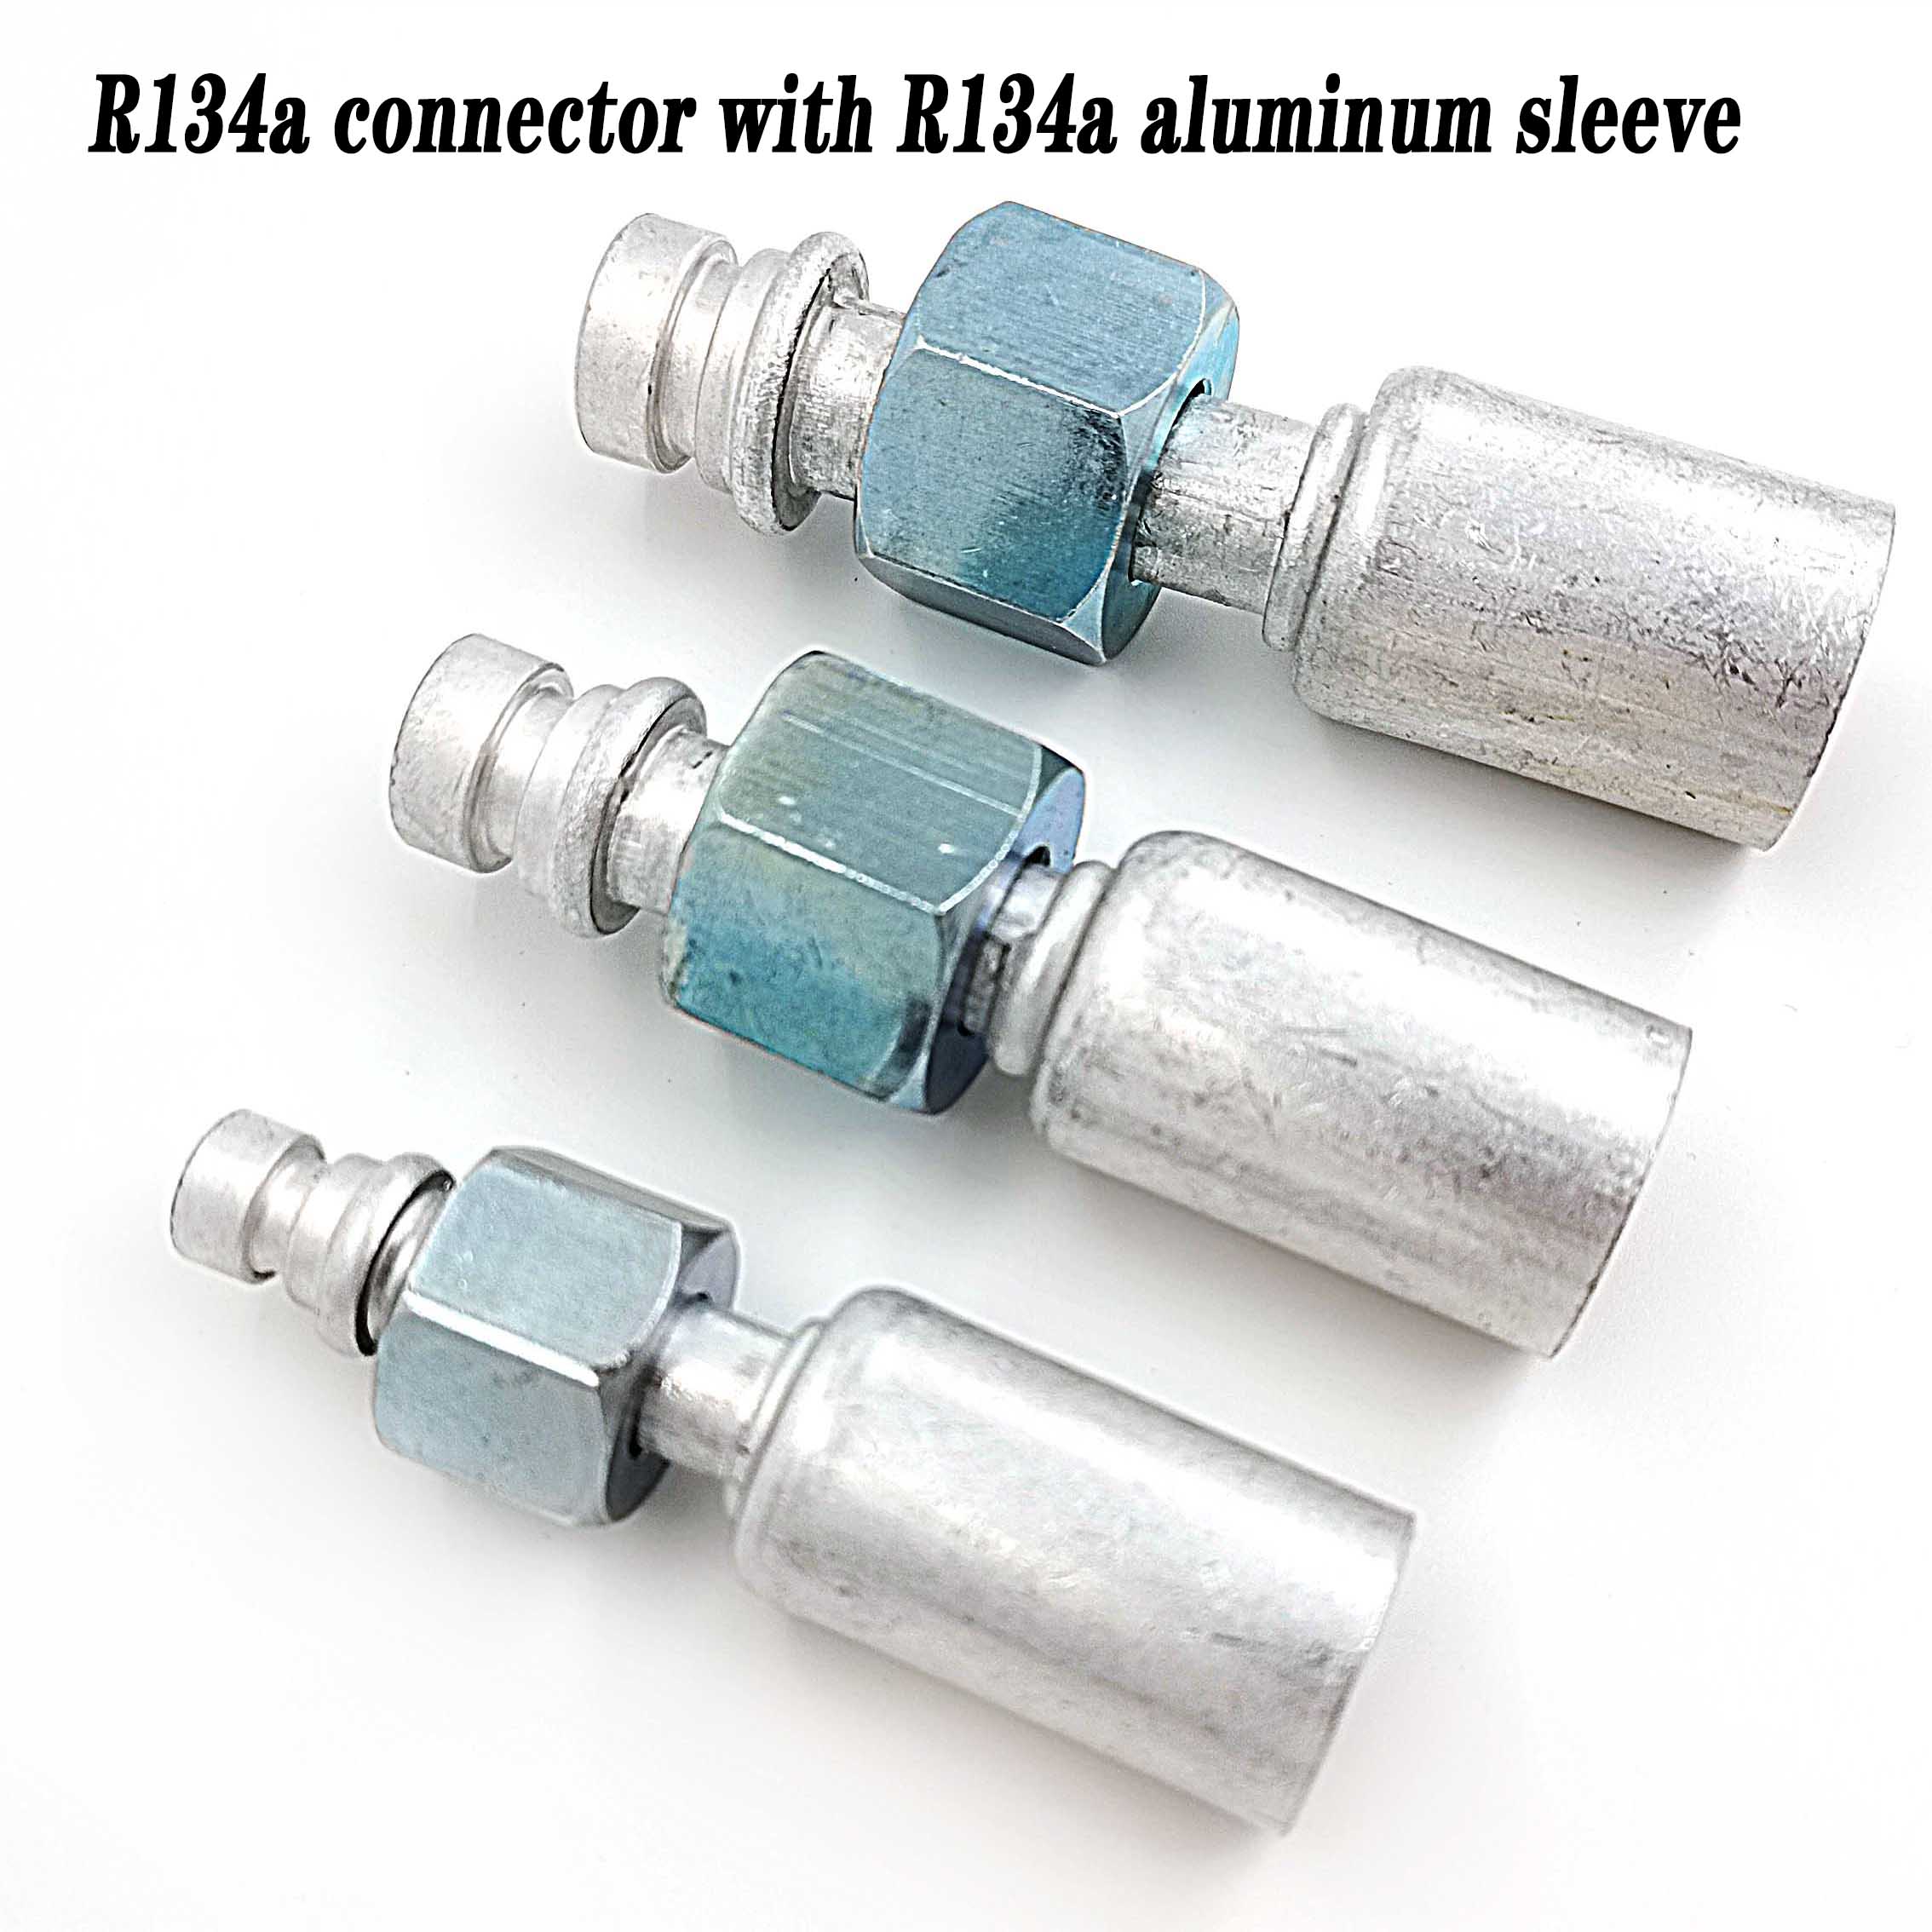 (6 stk. (lige) aluminiumsarmaturer til klimaanlæg, slangeforbindelser  r134a 3/8,1/2,5/8 med  r134a bøsning af aluminium